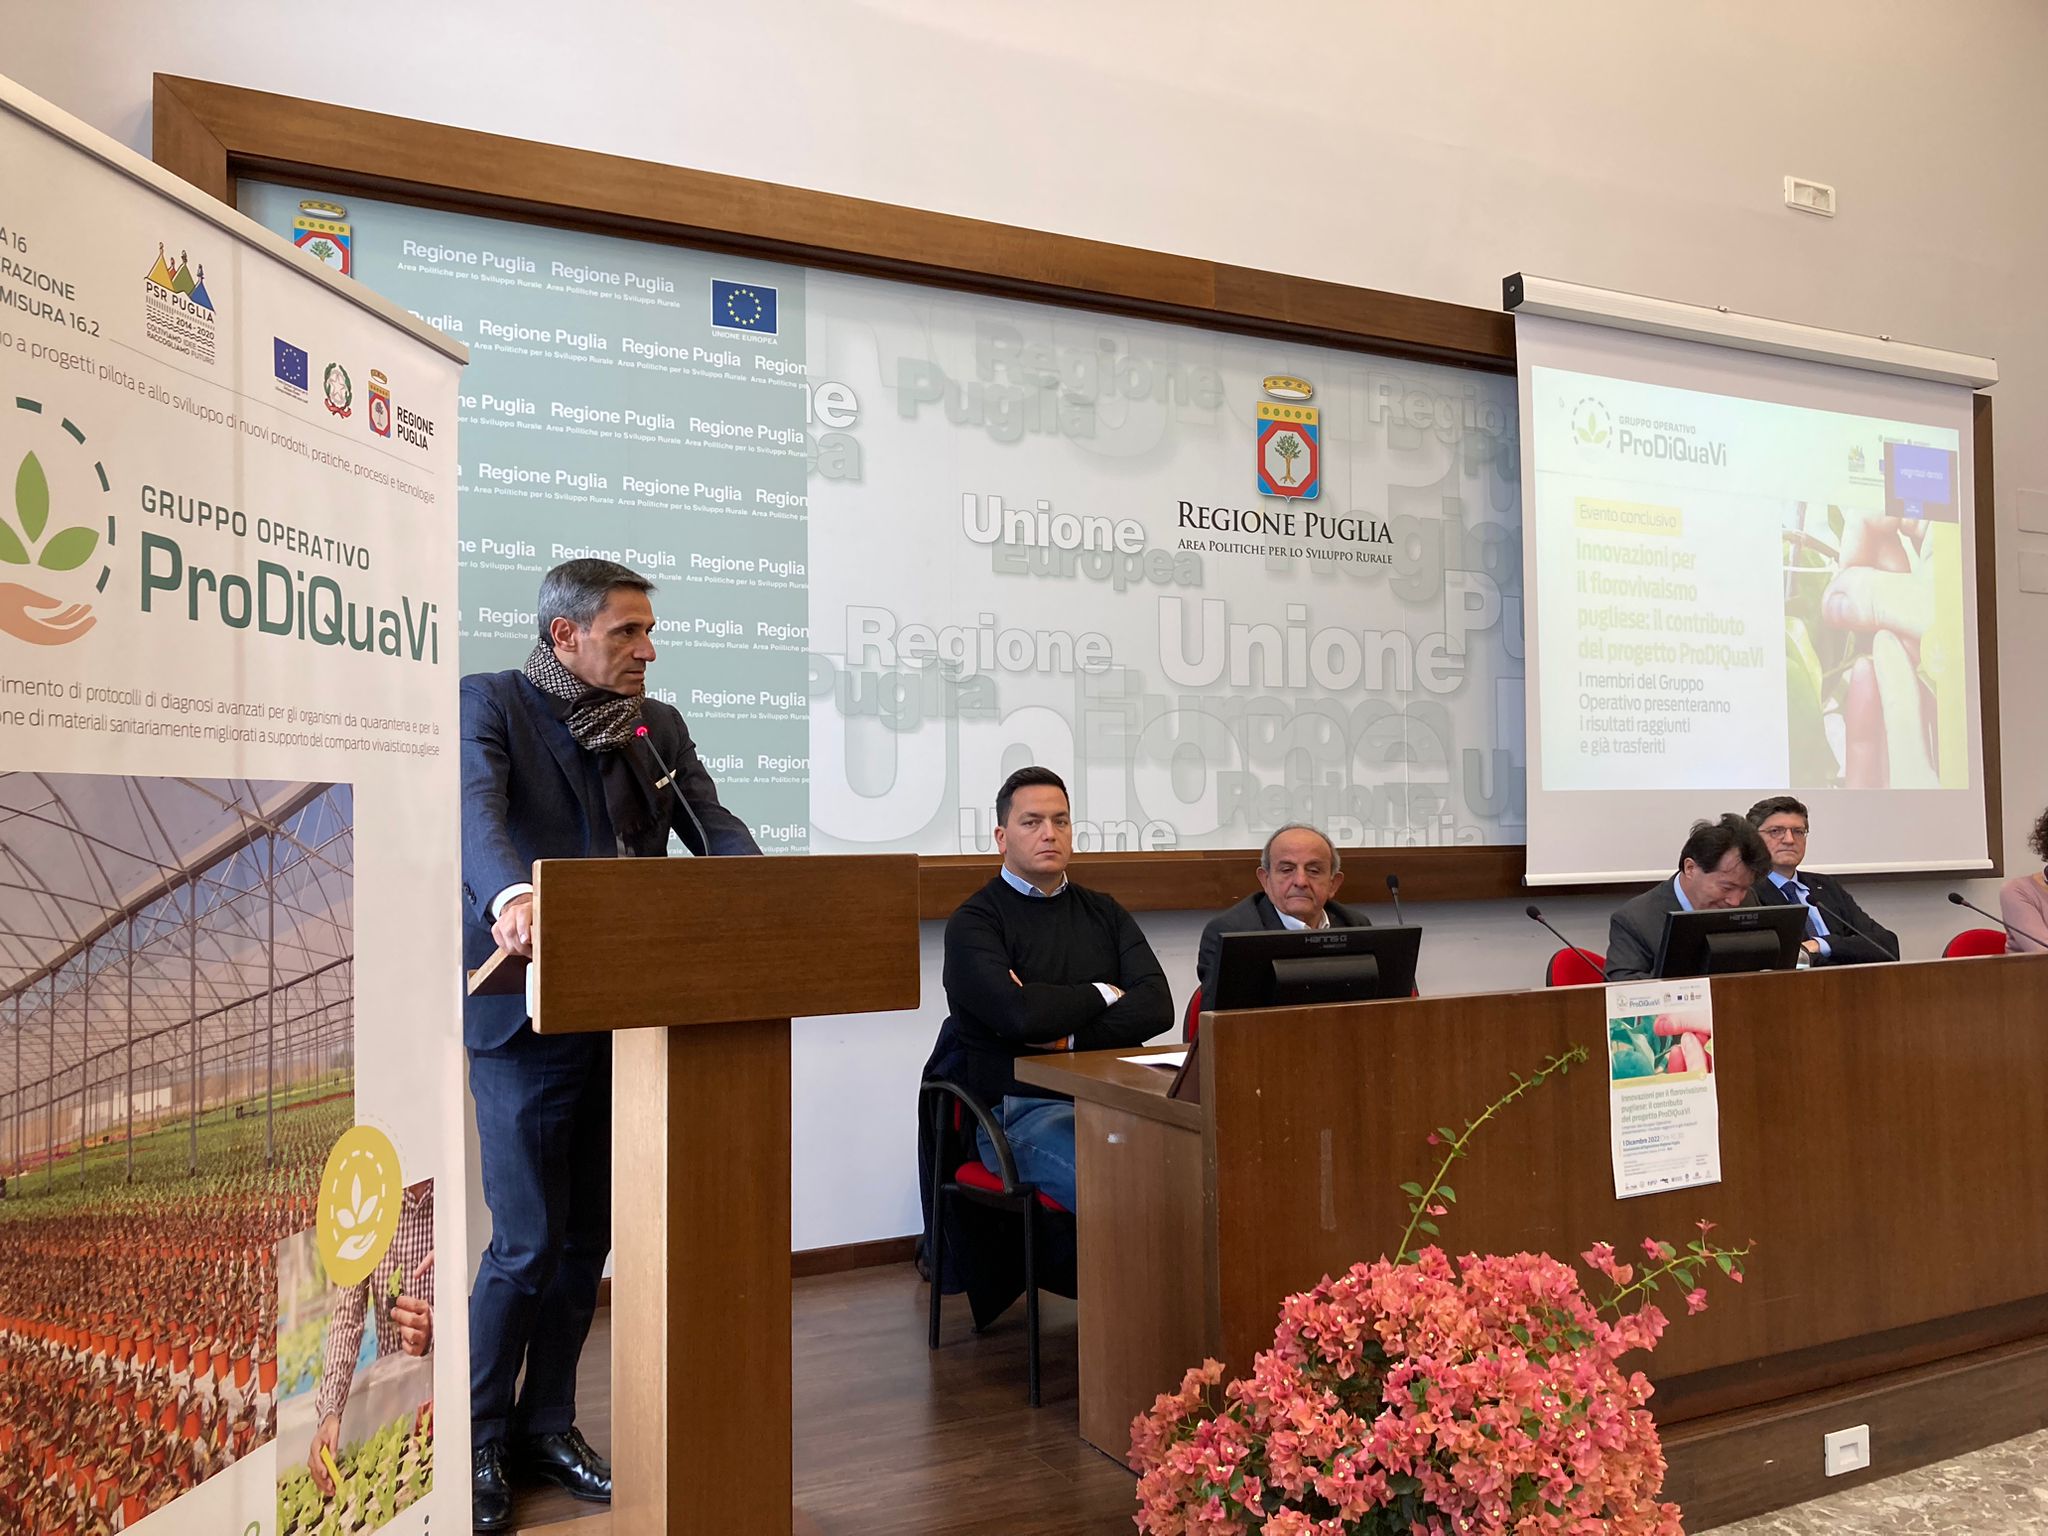 Galleria Innovazioni per il florovivaismo pugliese: il contributo del progetto 'ProDiQuaVi' sostenuto dal PSR Puglia  - Diapositiva 4 di 6